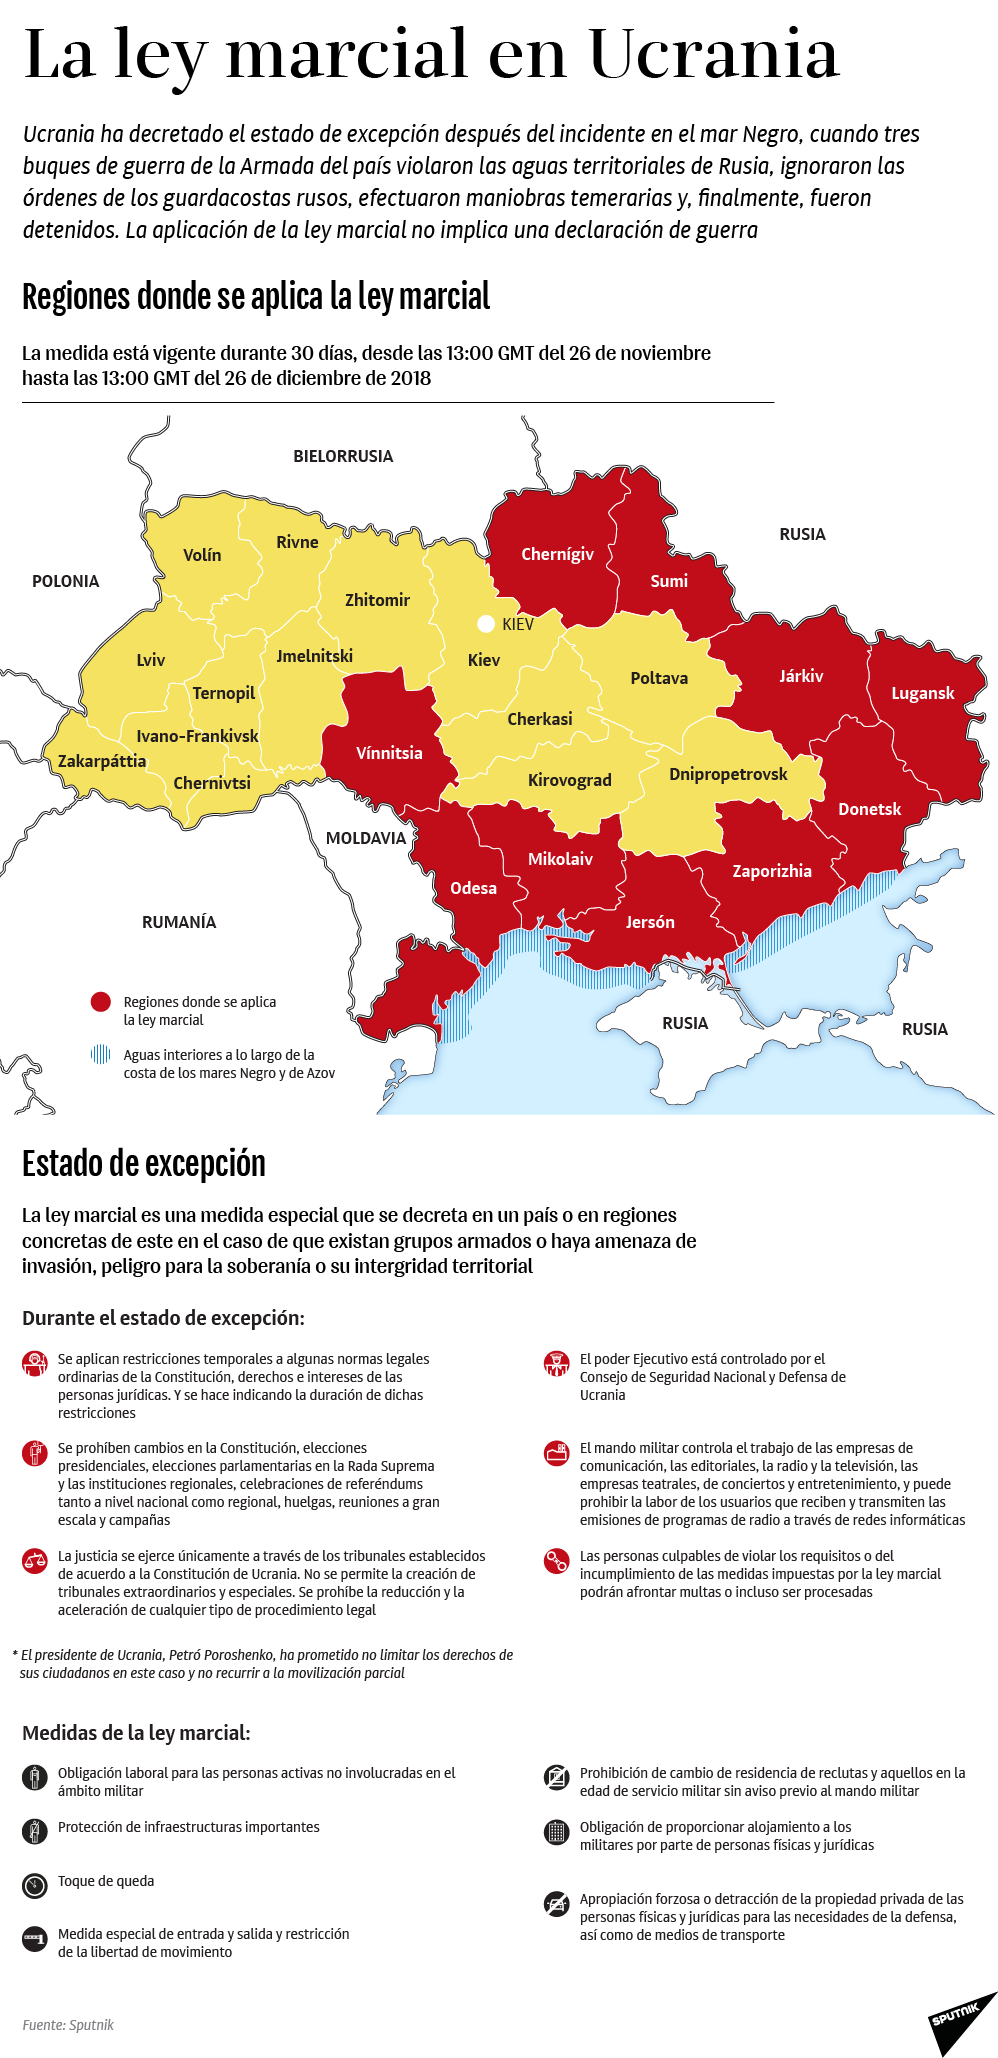 ¿Qué implica la implementación de la ley marcial en Ucrania? - Sputnik Mundo